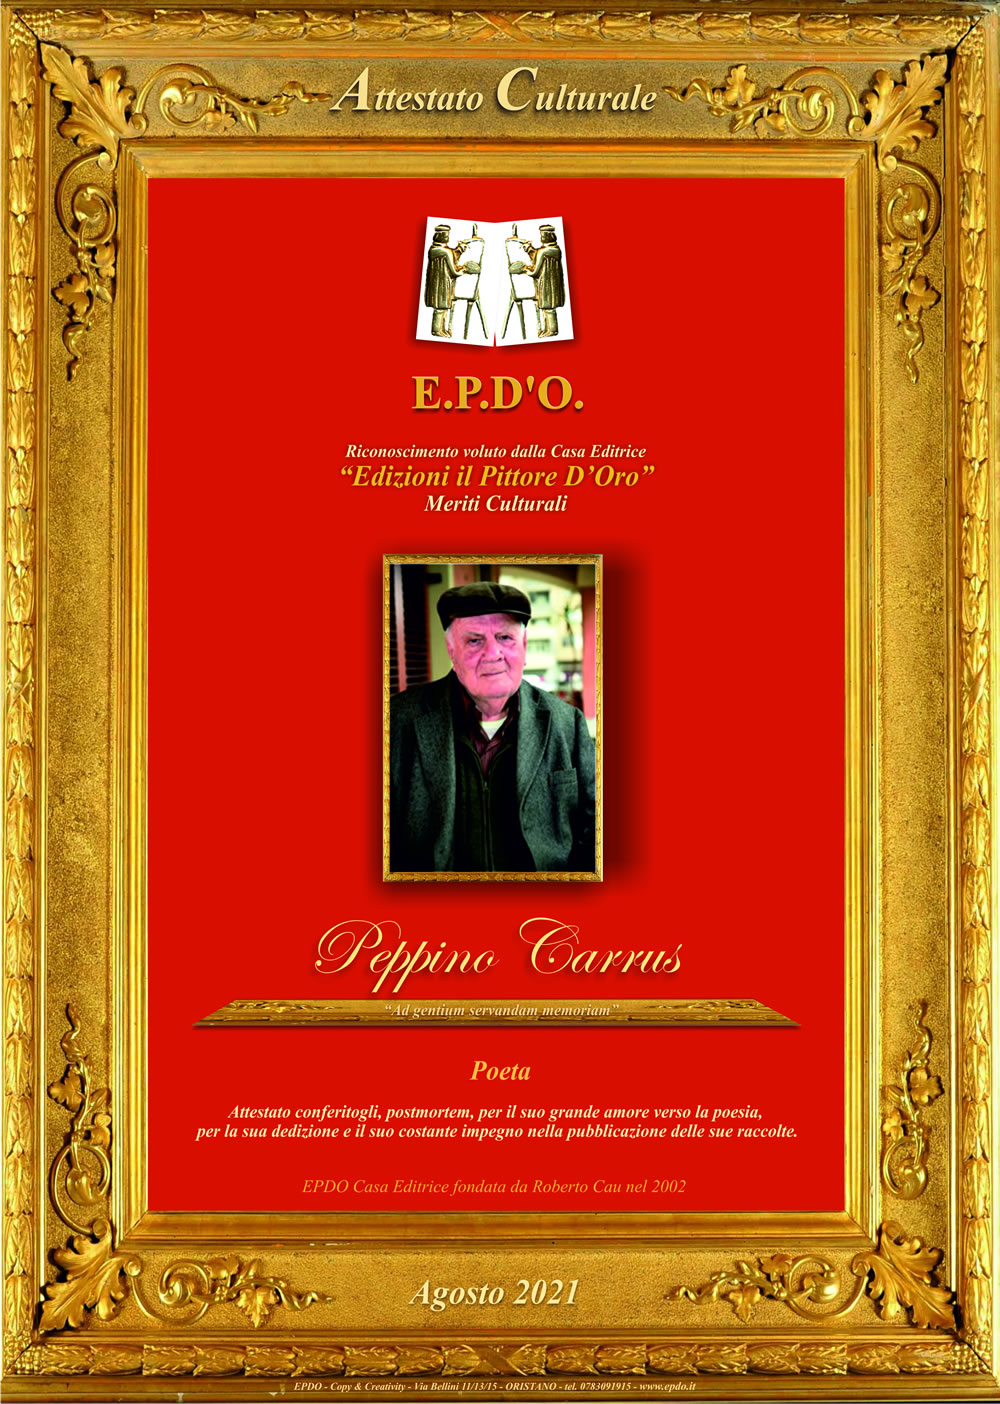 EPDO - Attestato Culturale Peppino Carrus